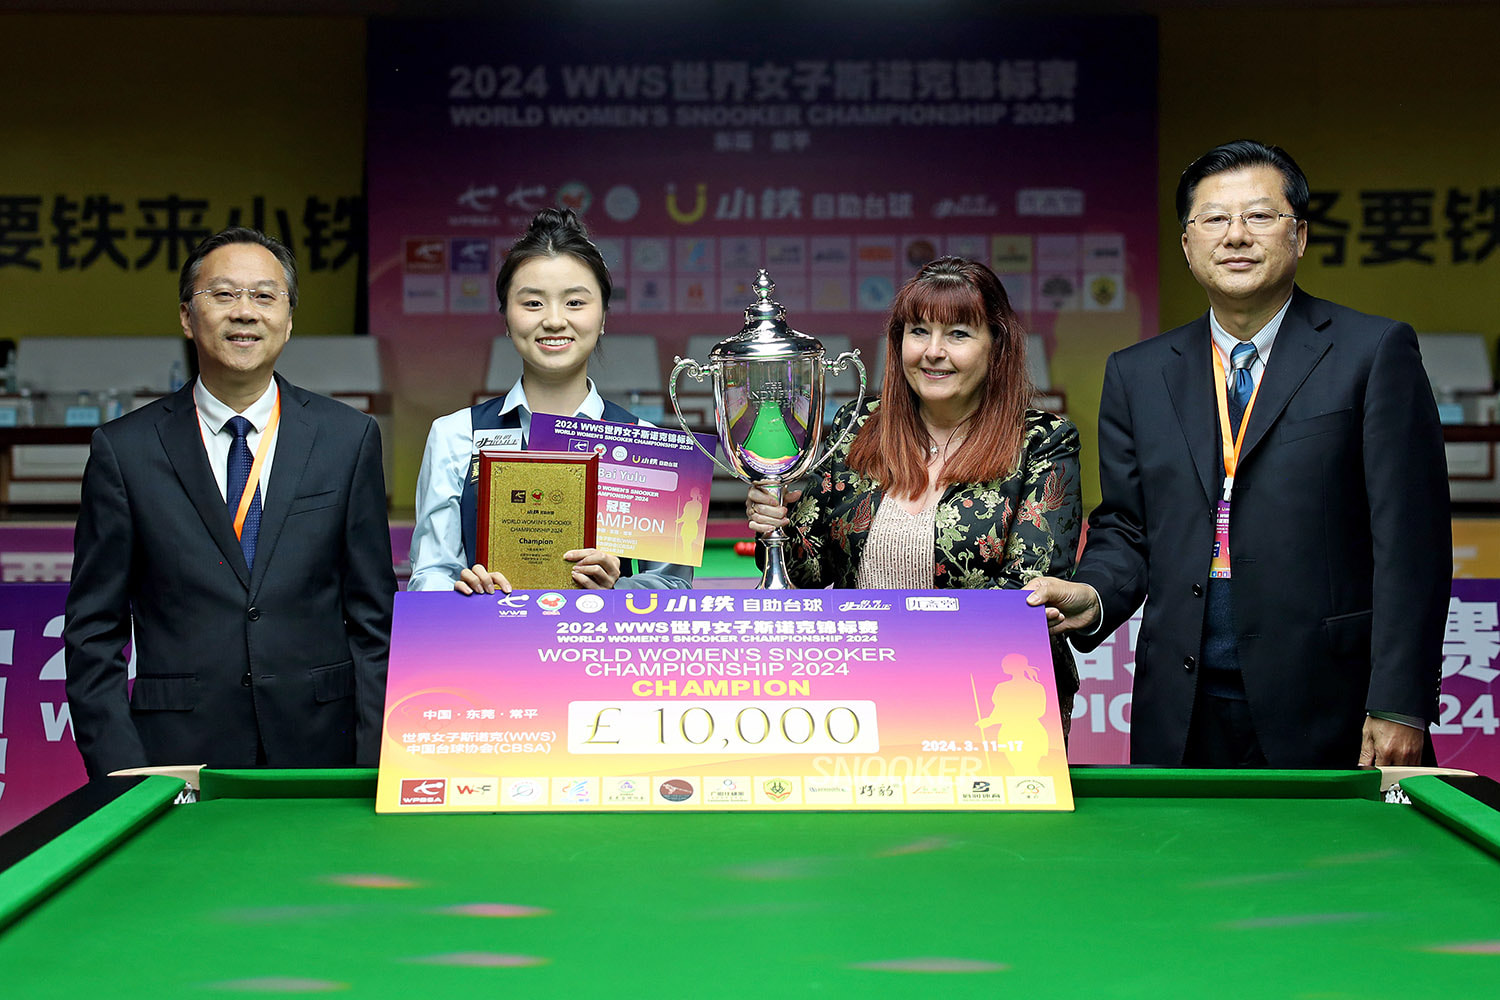 Aufnahme von Bai Yulu mit dem Siegerpokal.